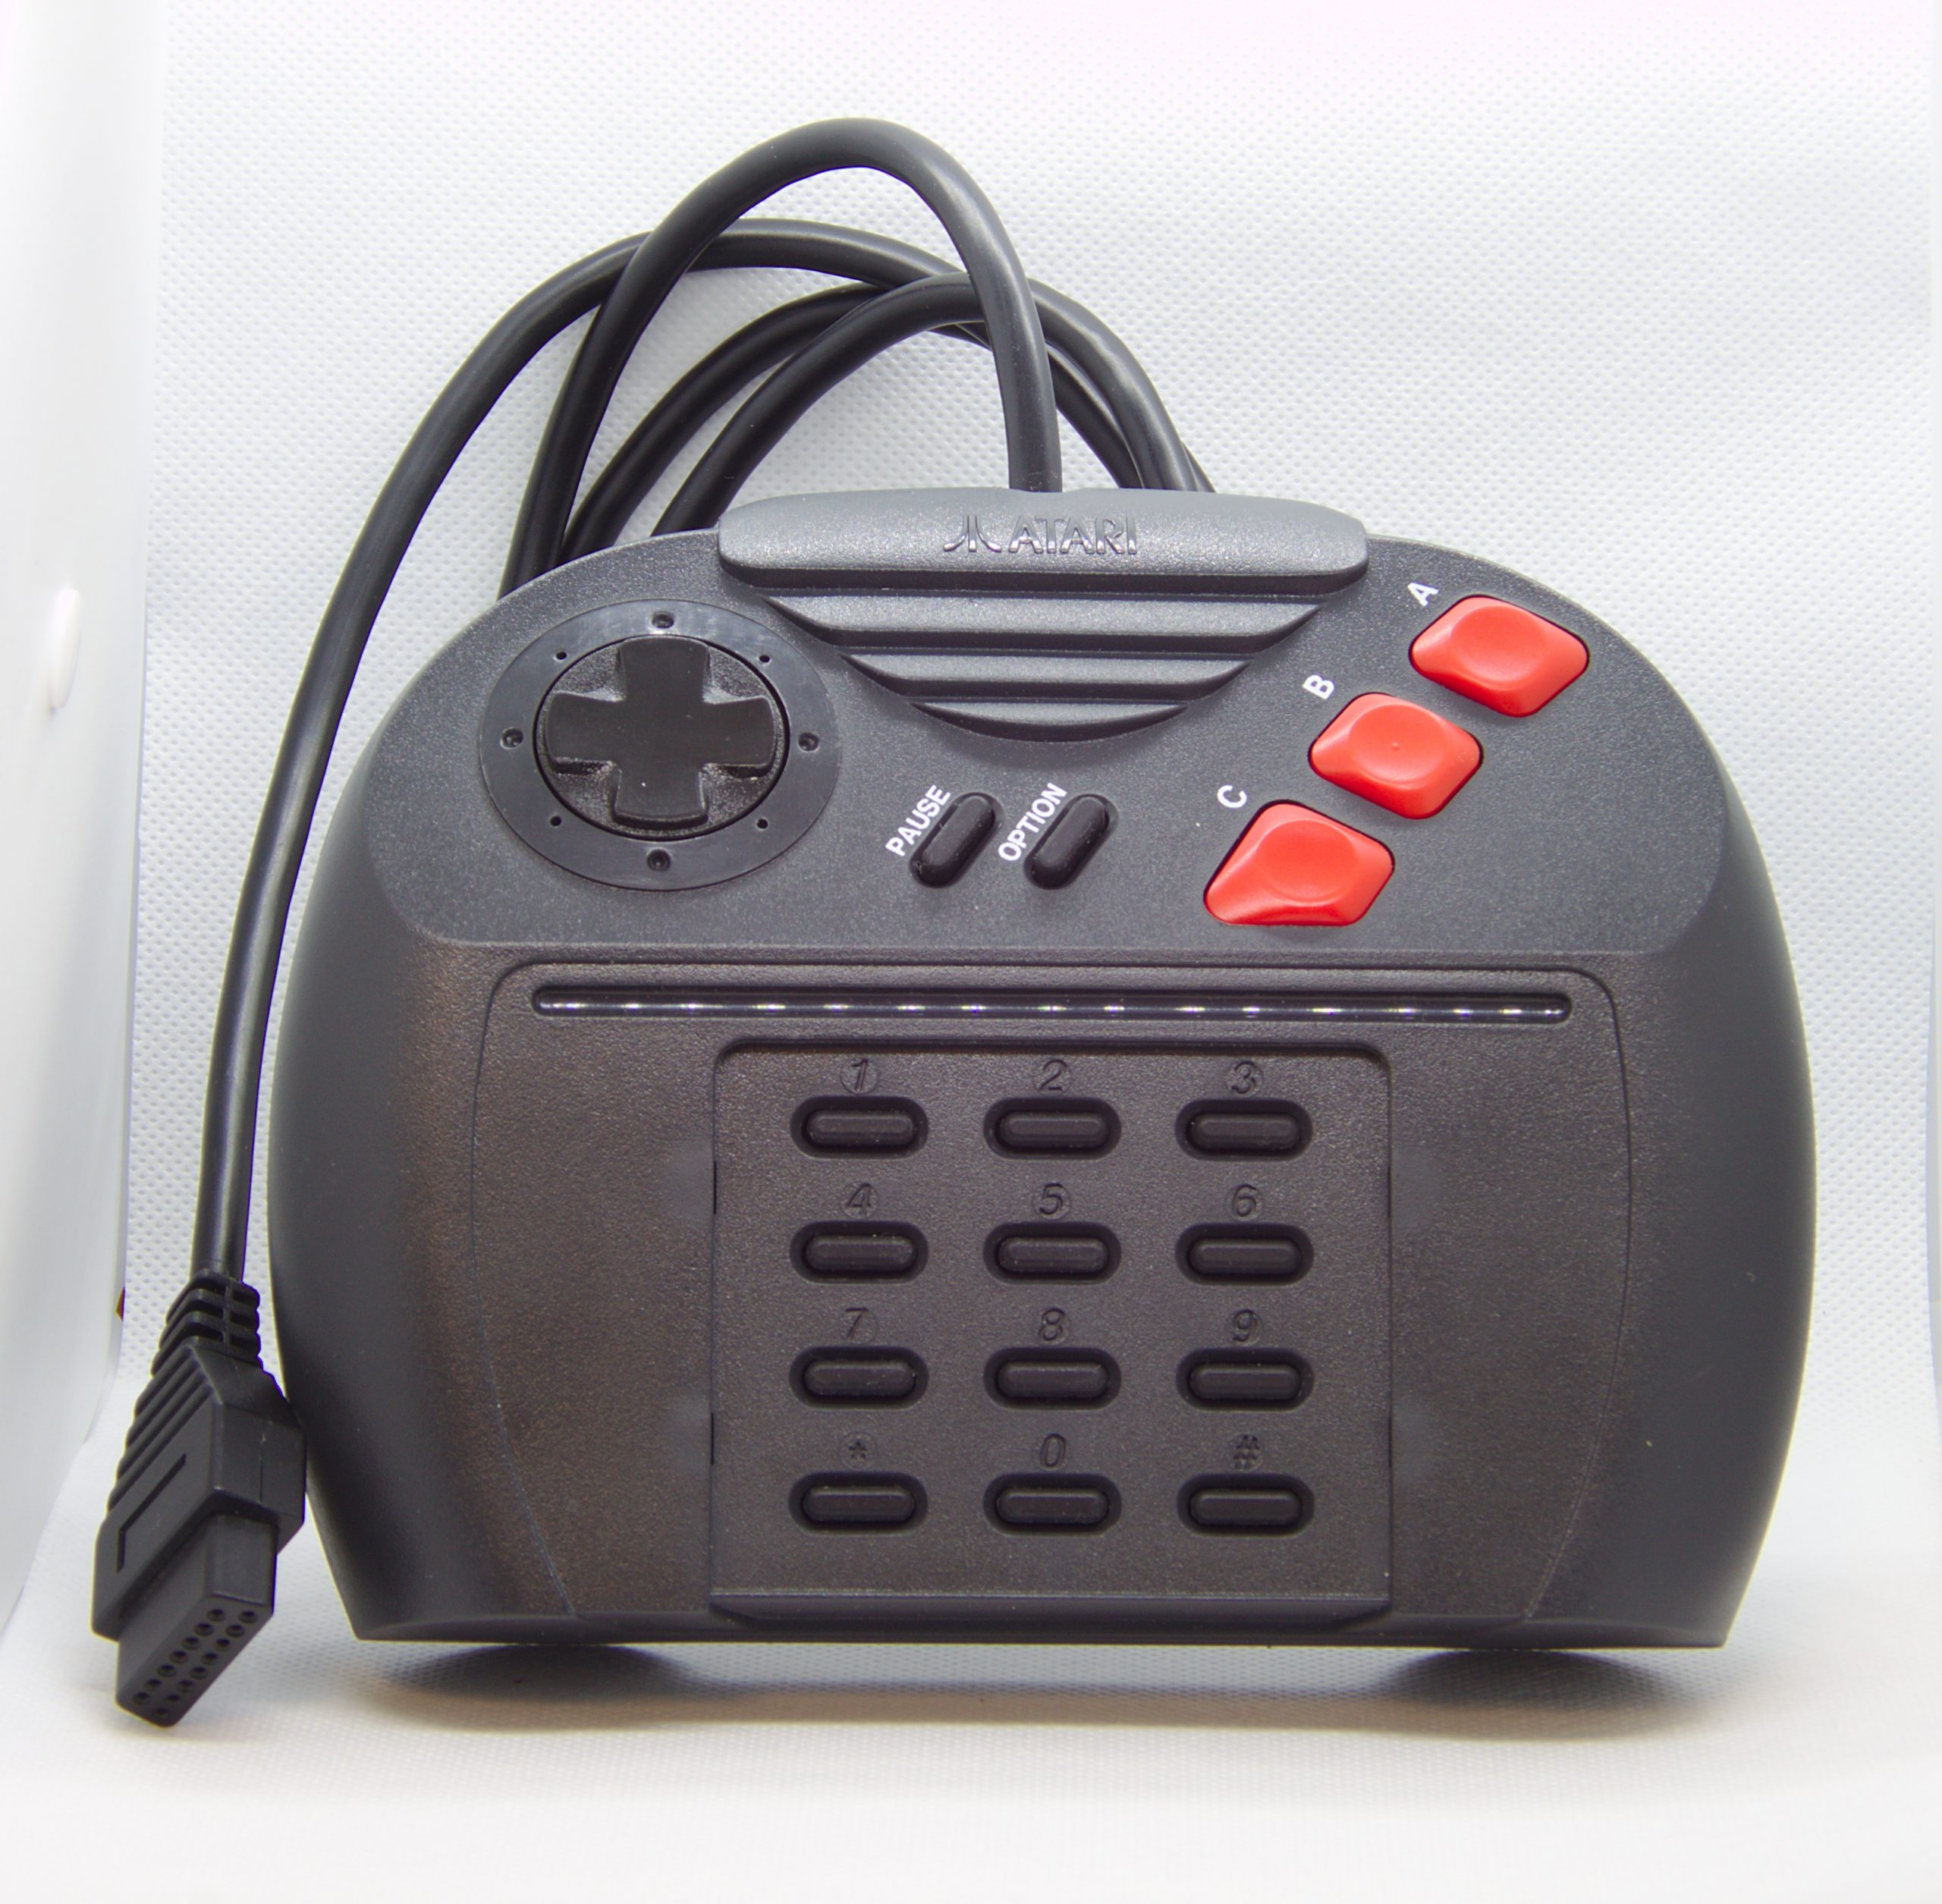 remembering the Atari Jaguar - Versatile Controller